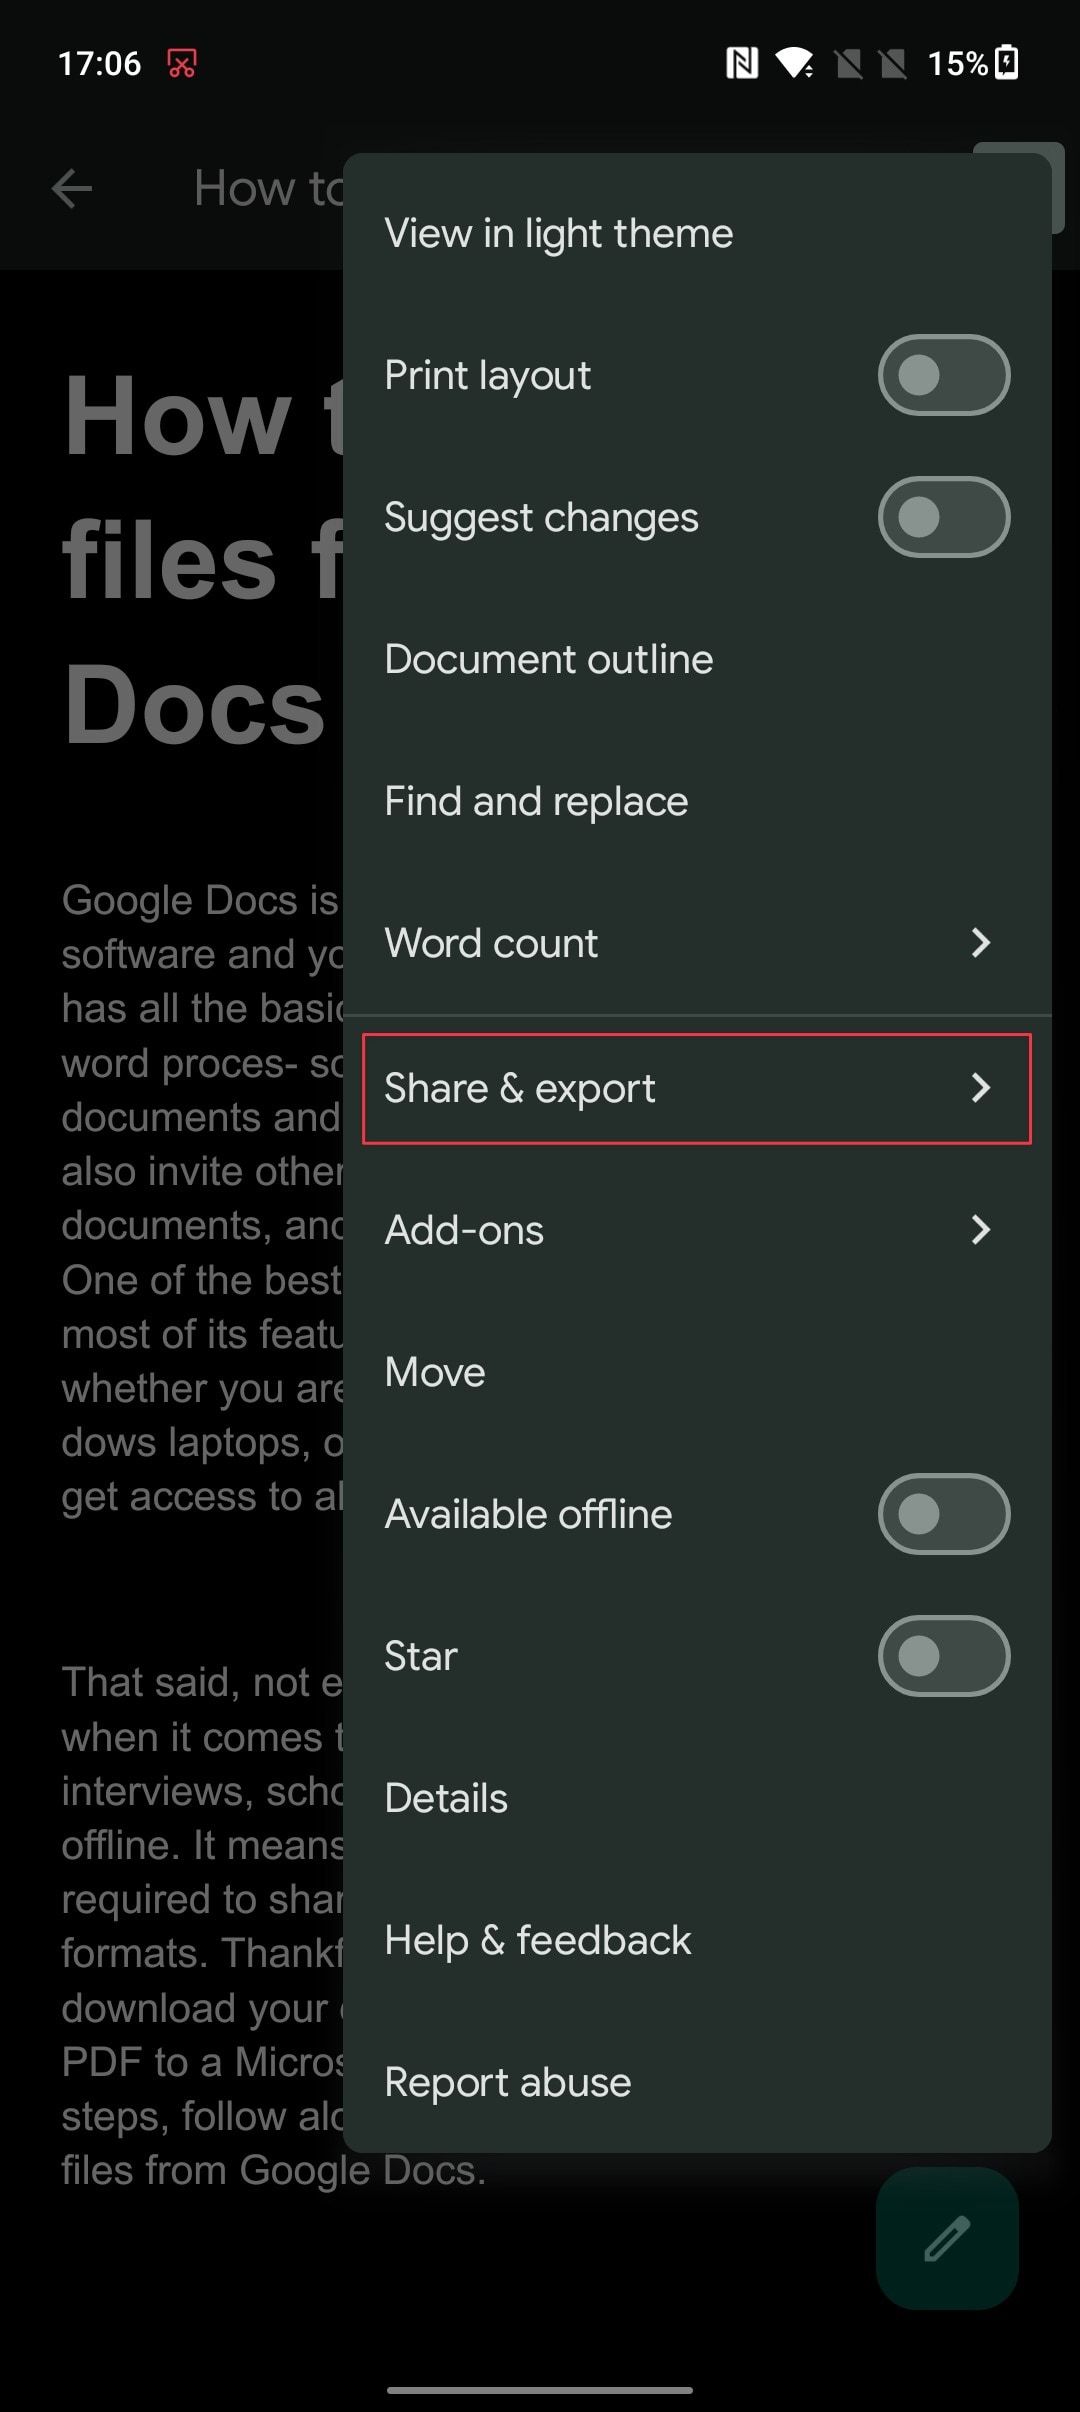 Selecione Compartilhar e exportar para exportar arquivos do Google Docs no Android